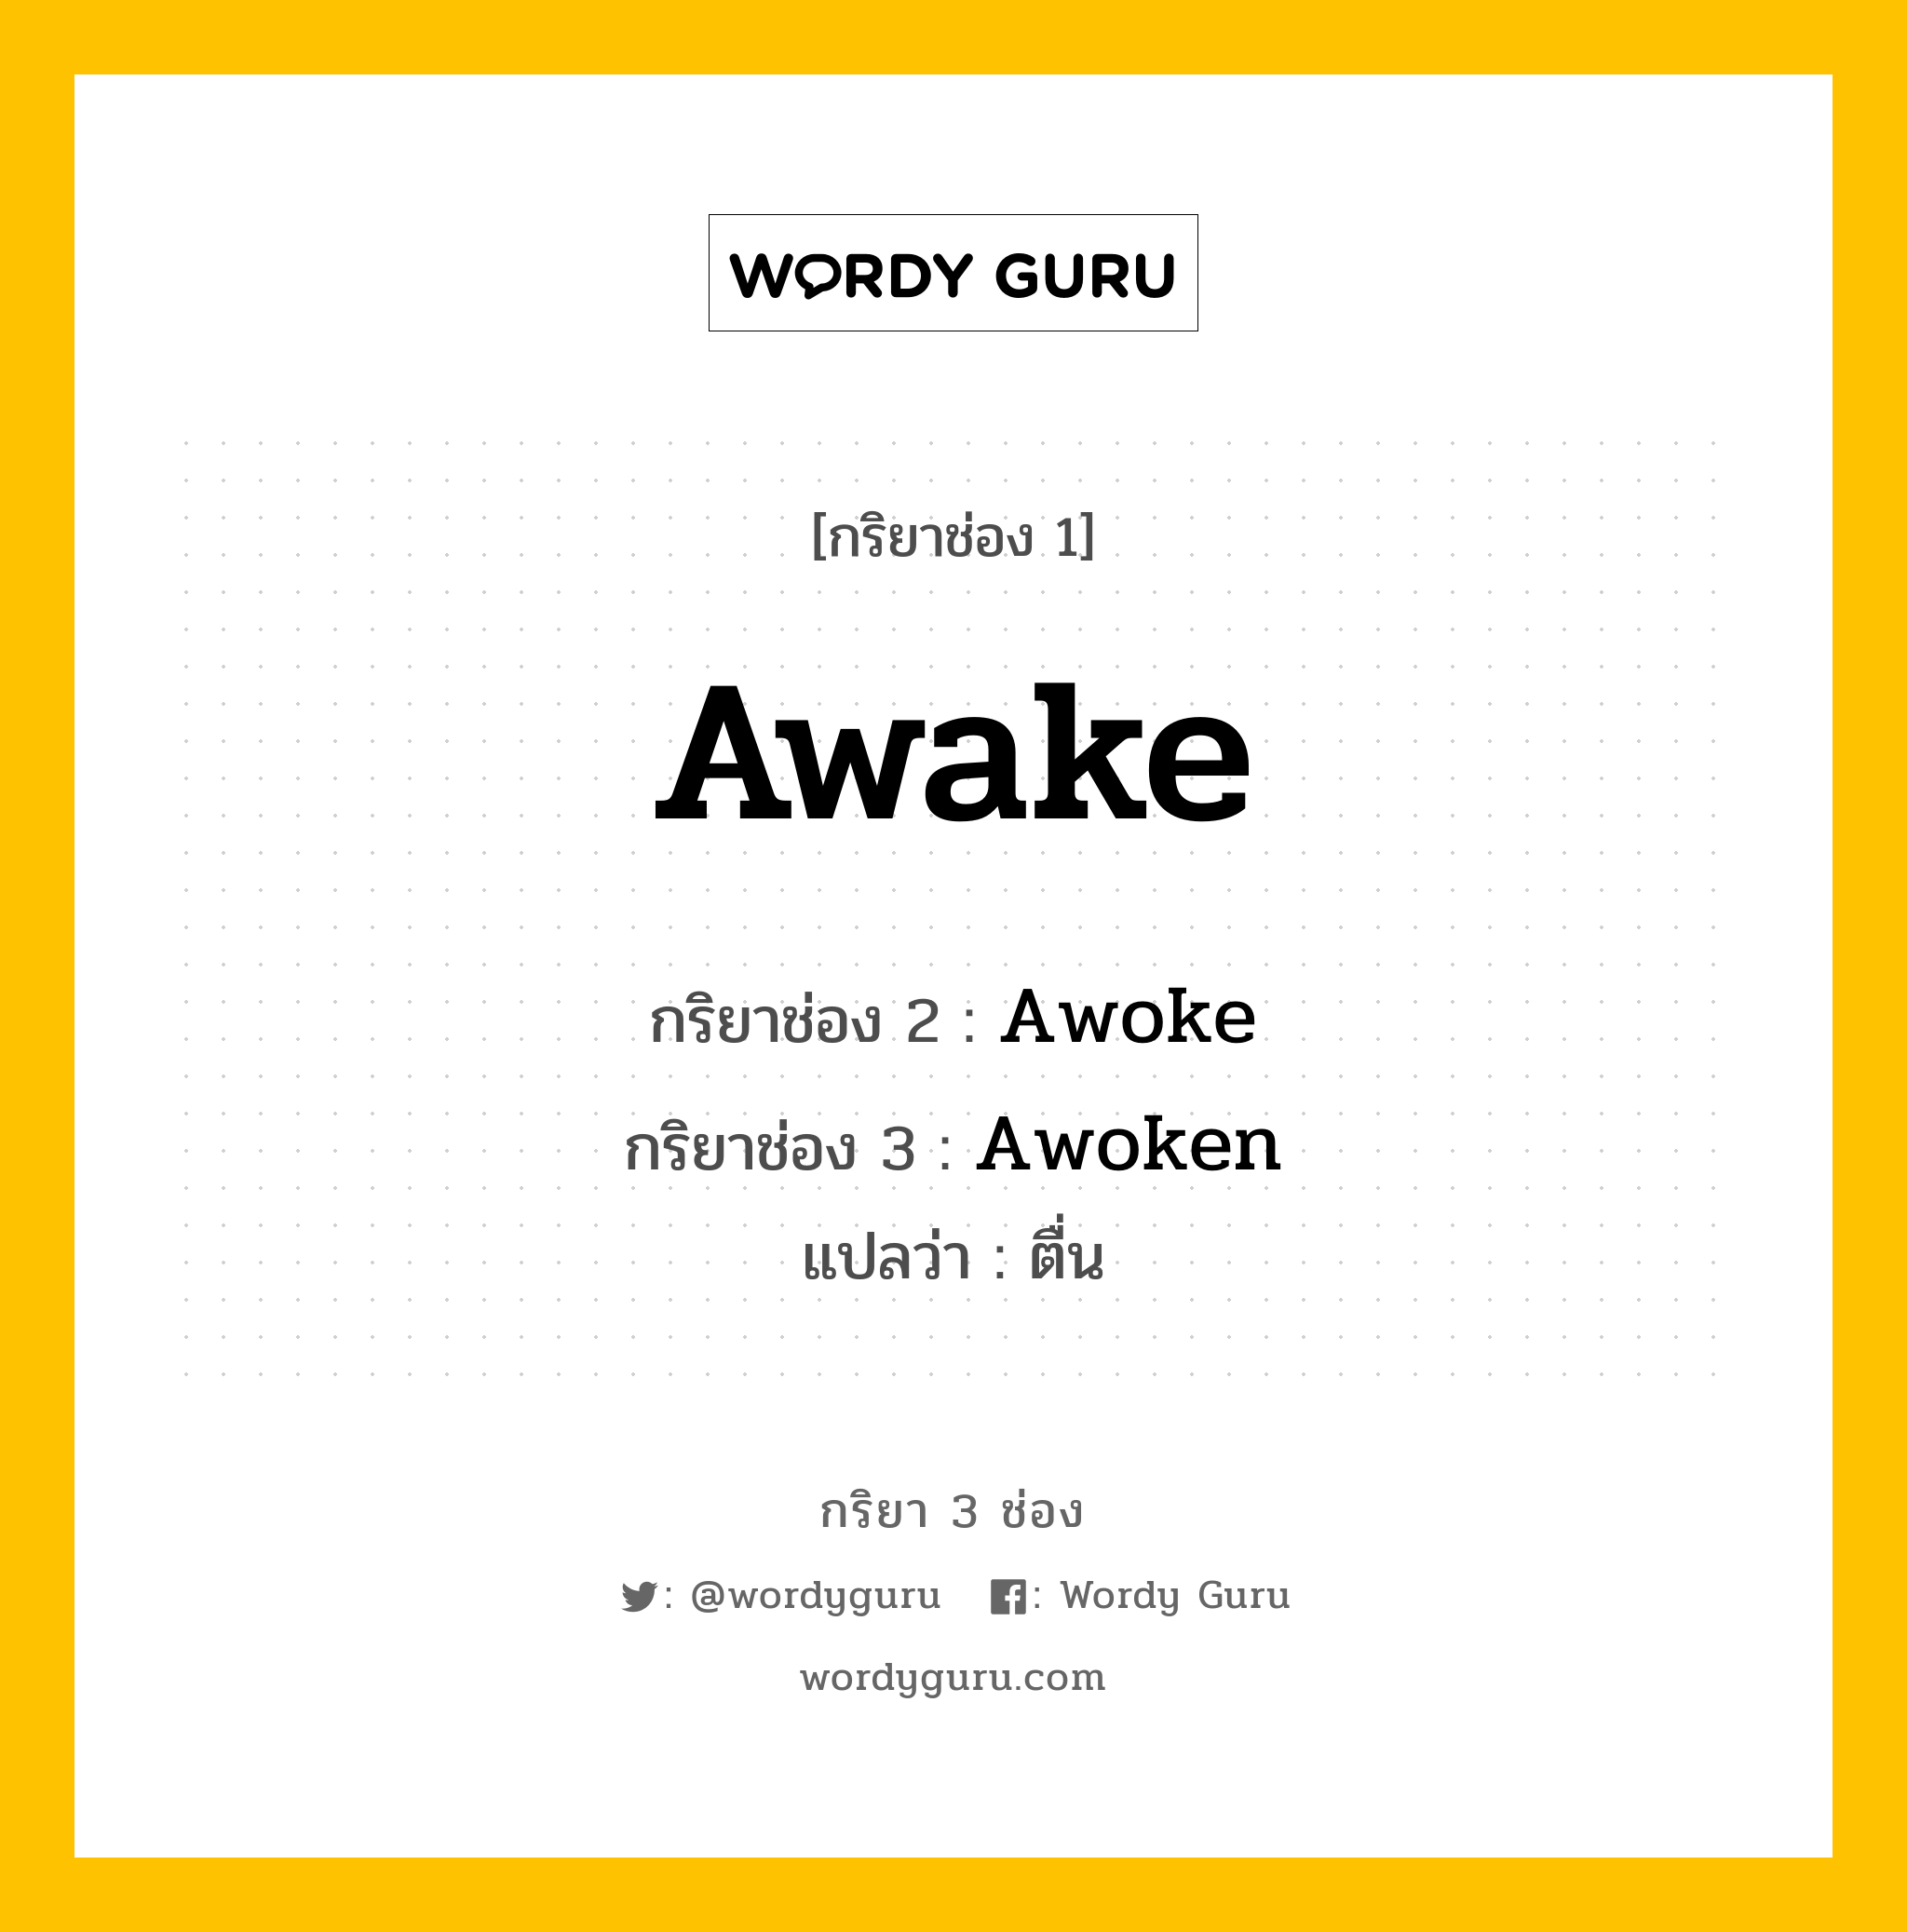 Awake มีกริยา 3 ช่องอะไรบ้าง? คำศัพท์ในกลุ่มประเภท Irregular Verb, กริยาช่อง 1 Awake กริยาช่อง 2 Awoke กริยาช่อง 3 Awoken แปลว่า ตื่น หมวด Irregular Verb หมวด Irregular Verb